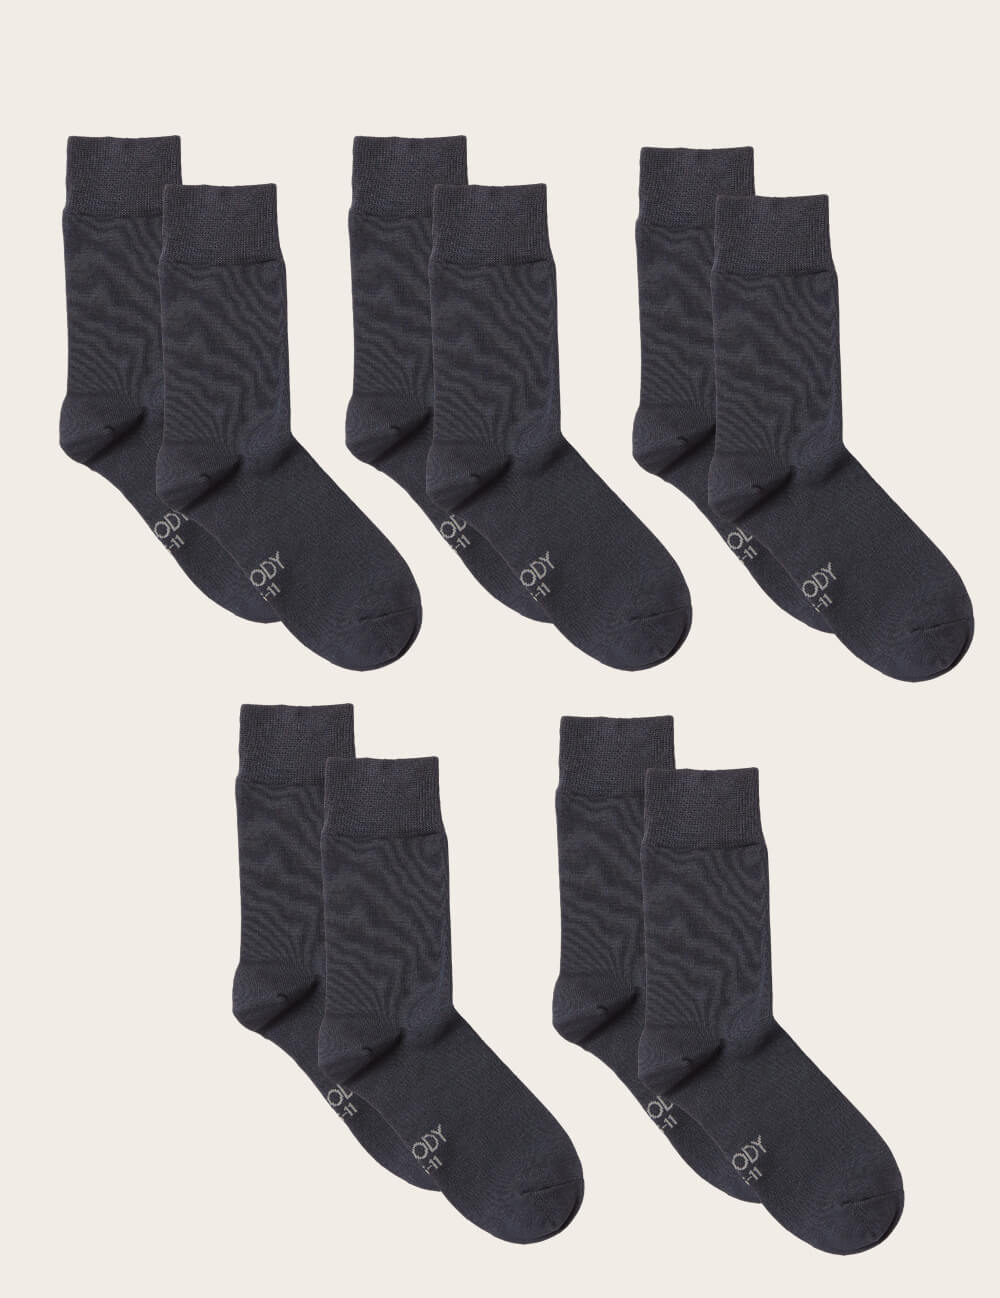 Boody Bamboo 5-pack of Men's Long Business Socks in Slate Gray